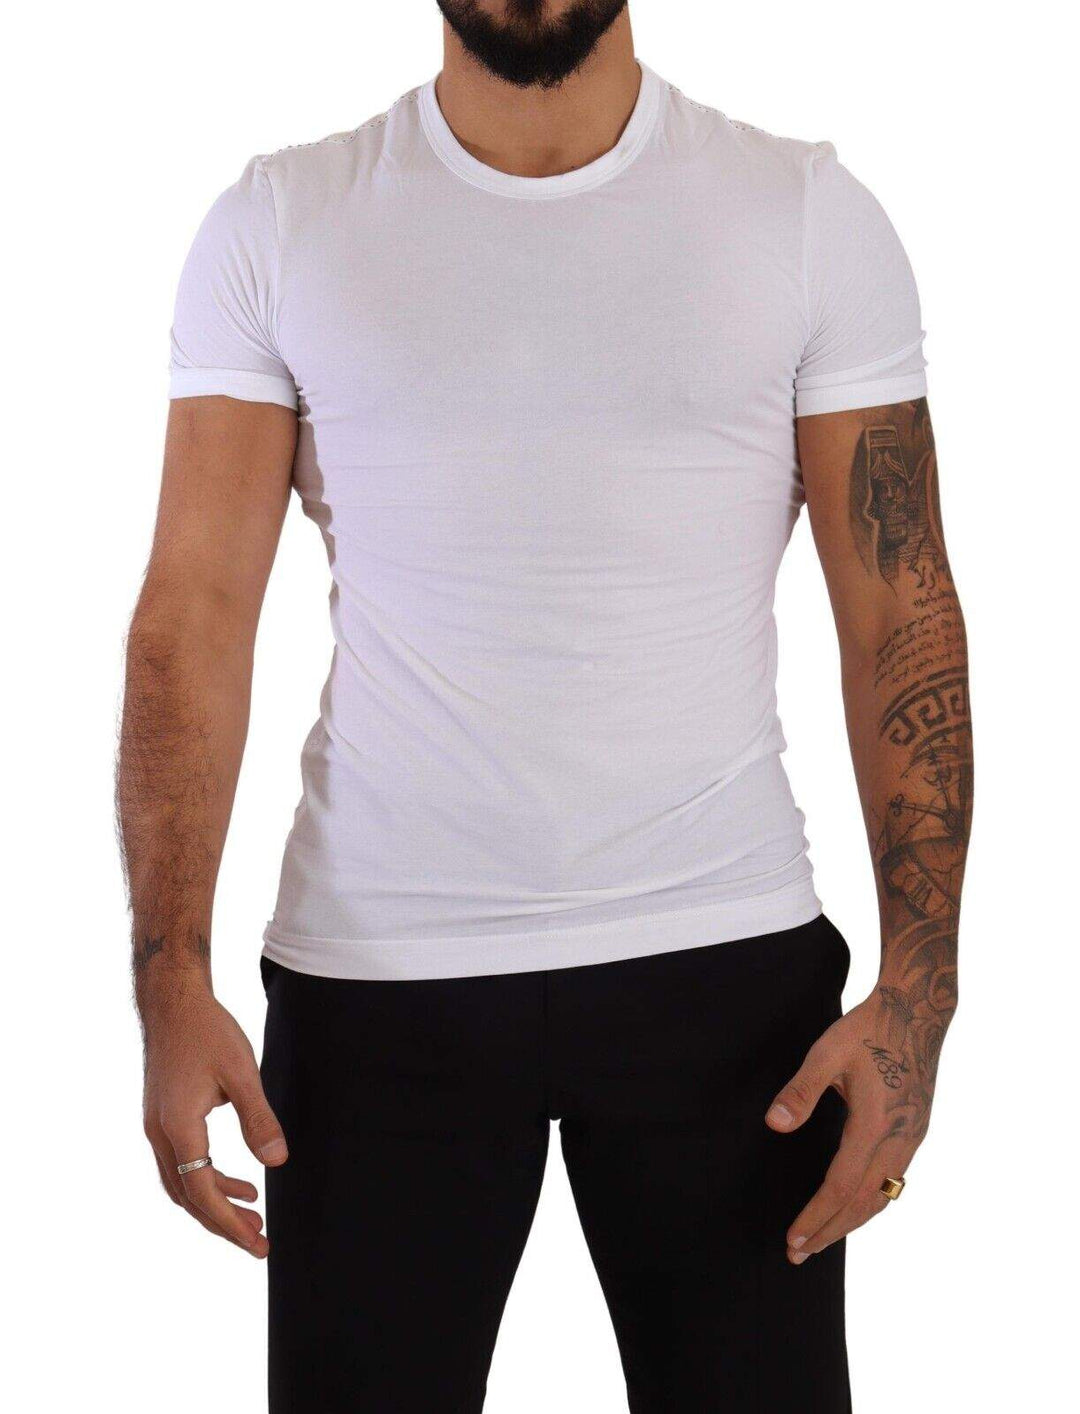 Dolce & Gabbana White Round Neck Cotton Stretch T-shirt Underwear #men, Dolce & Gabbana, feed-1, IT3 | XS, T-Shirts - Men - Clothing, Underwear - Men - Clothing, White at SEYMAYKA